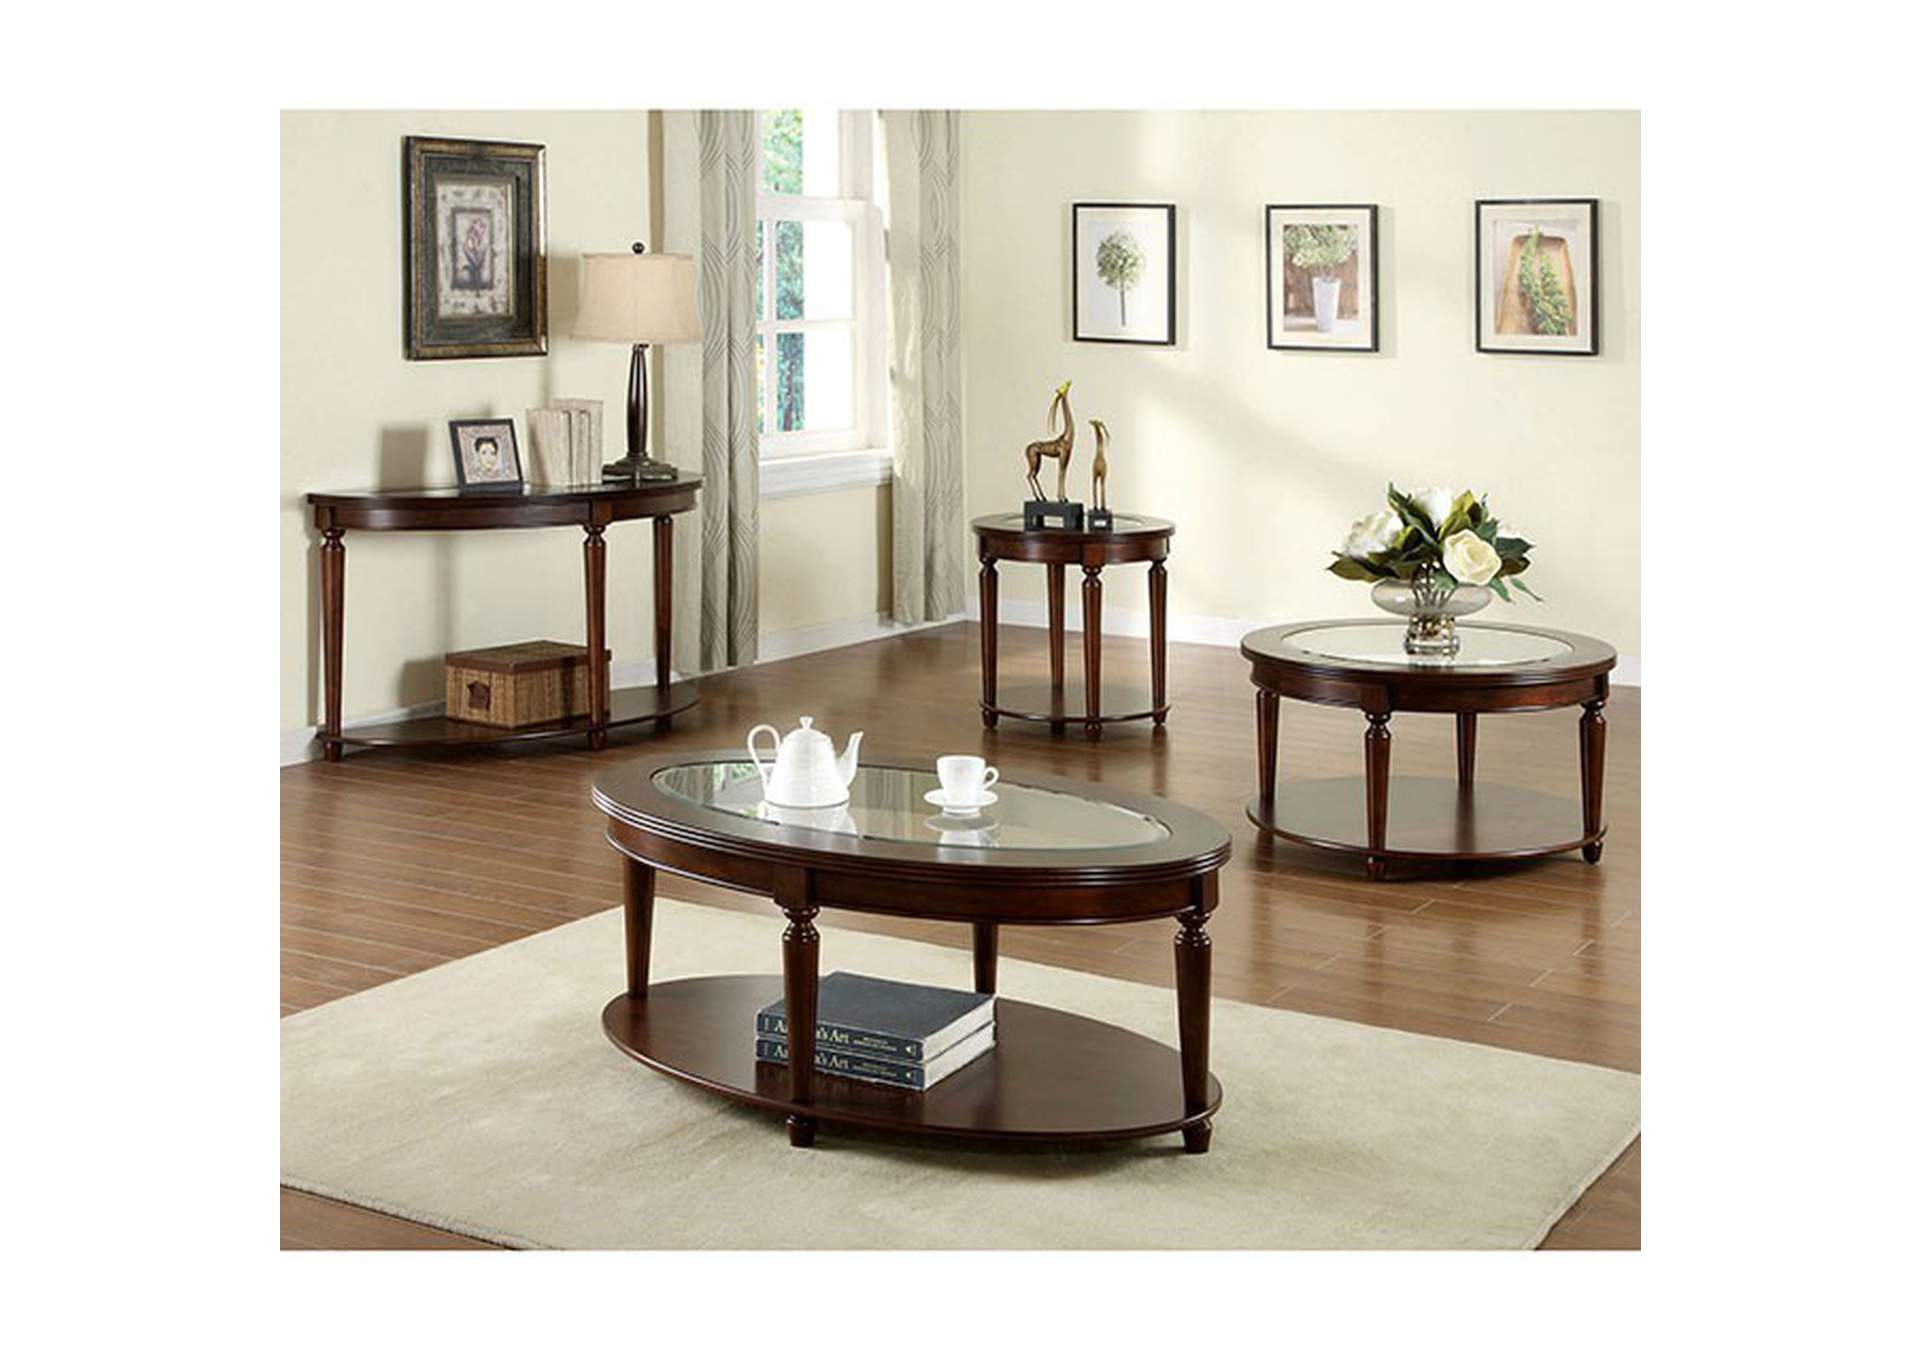 Granvia Sofa Table,Furniture of America